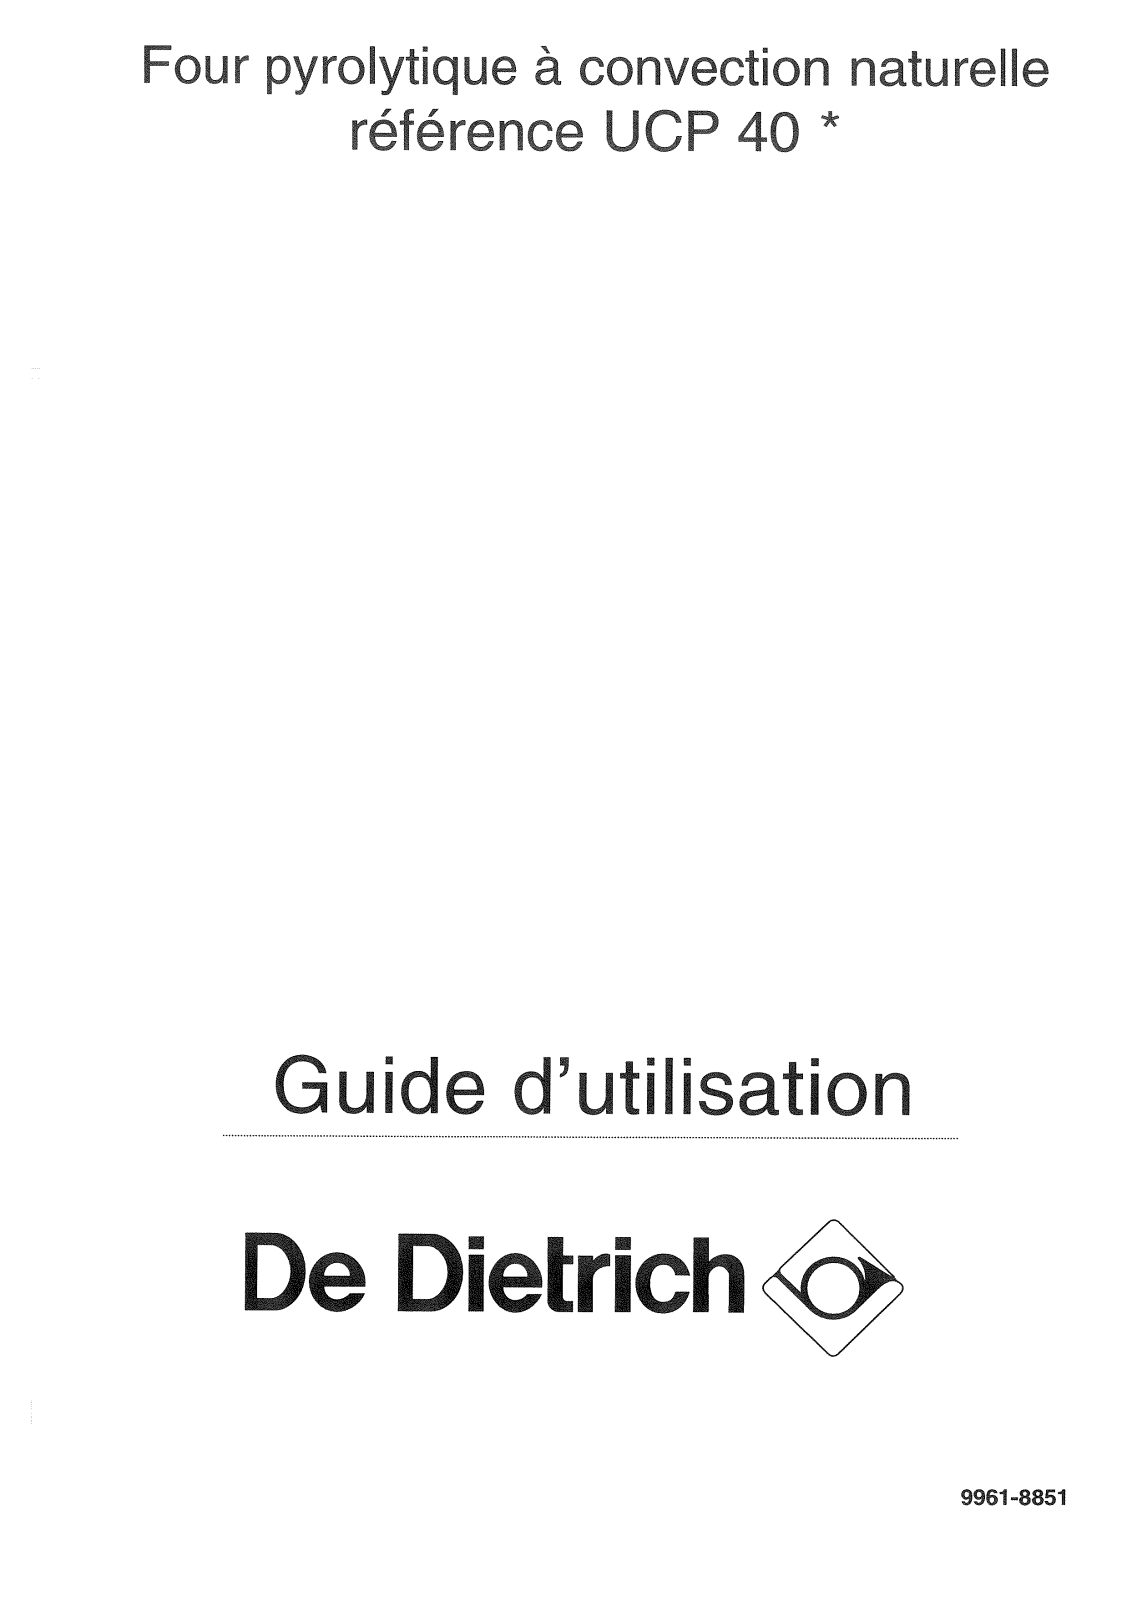 De dietrich UCP402E1, UCP401E1, UCP401E2 User Manual